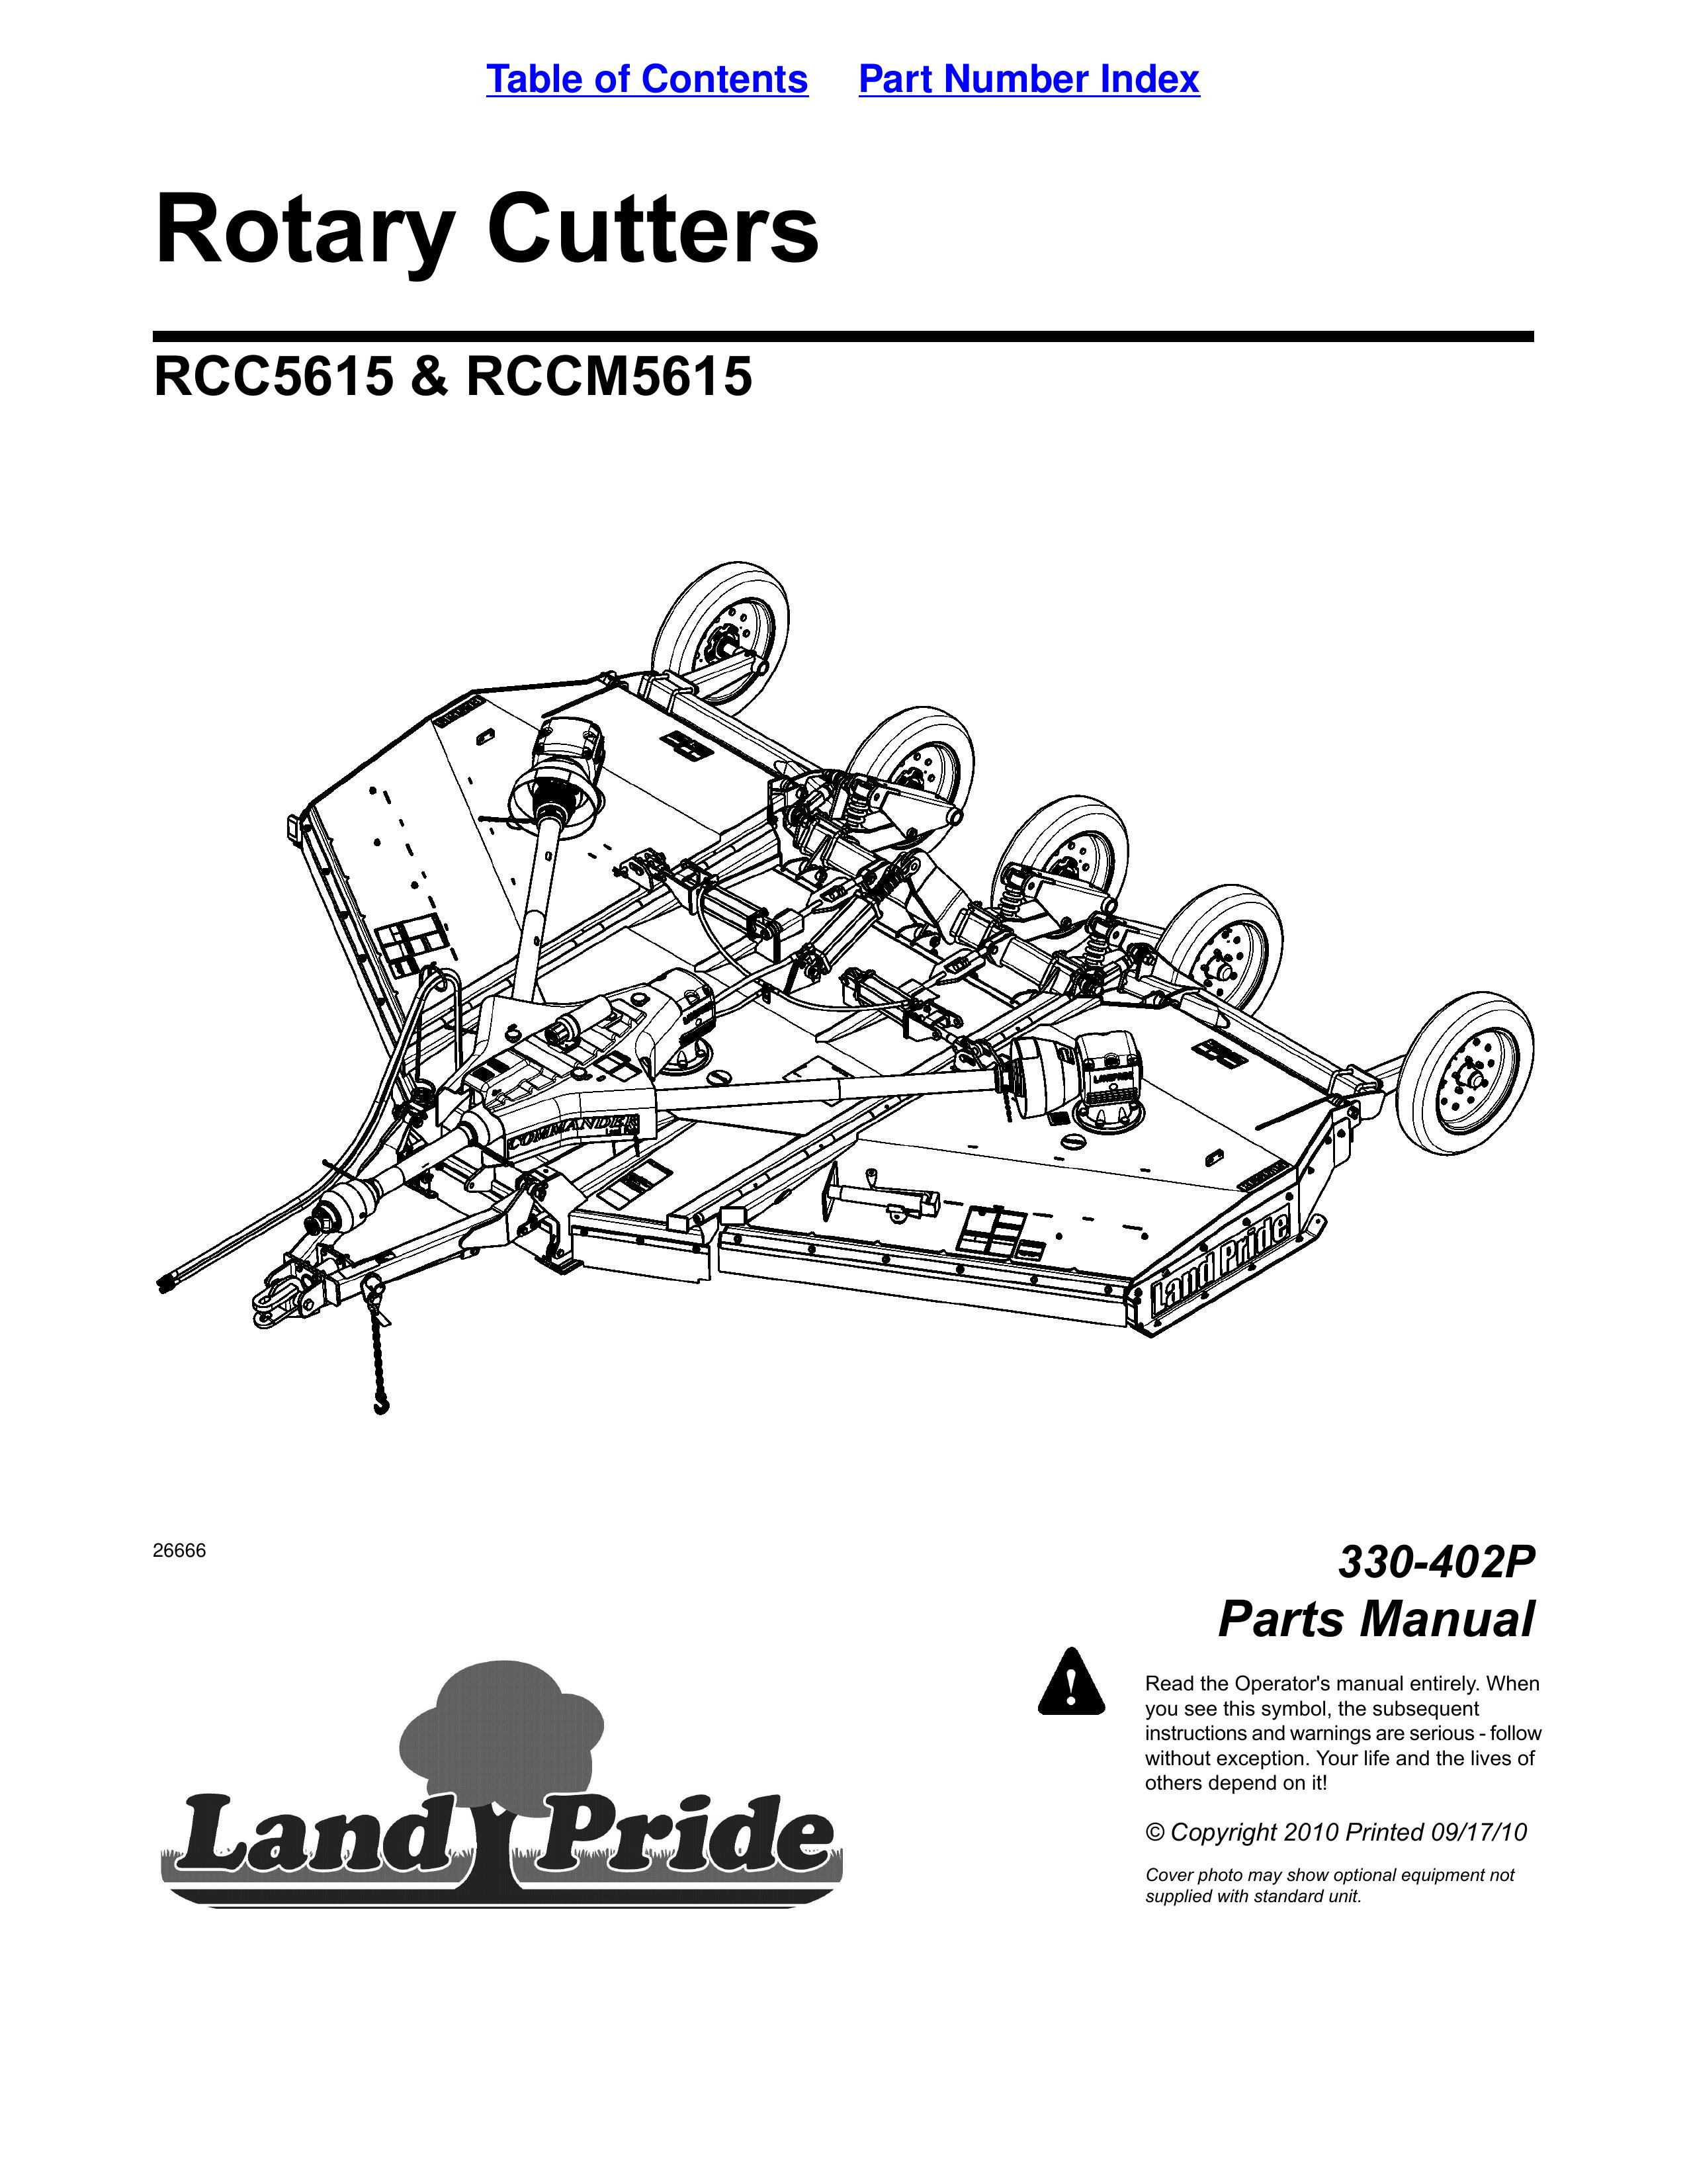 Land Pride RCC5615 Brush Cutter User Manual